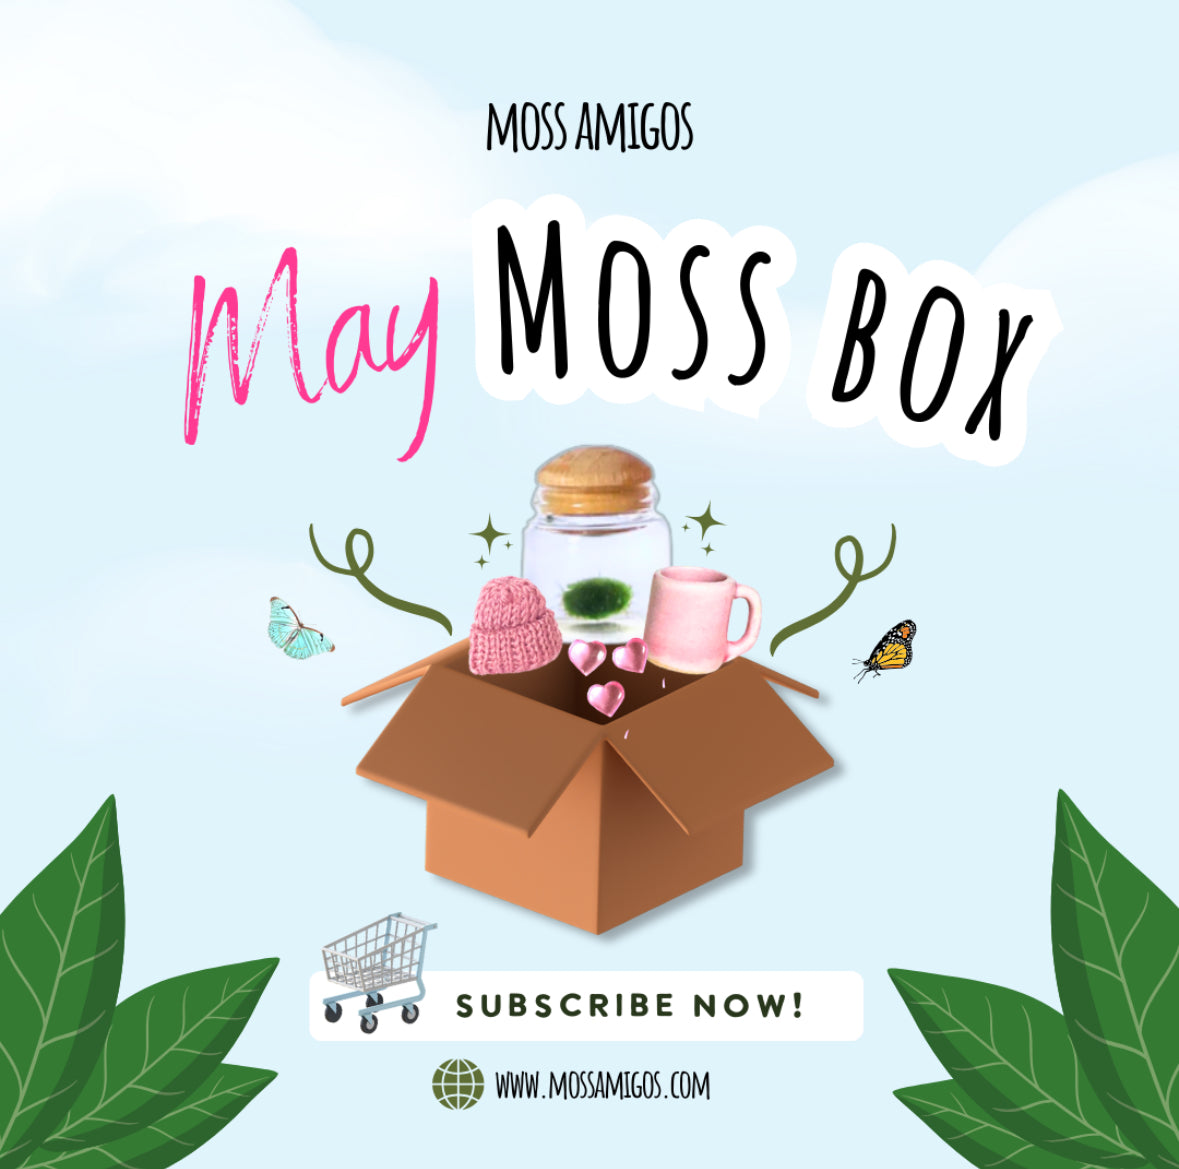 Moss Box